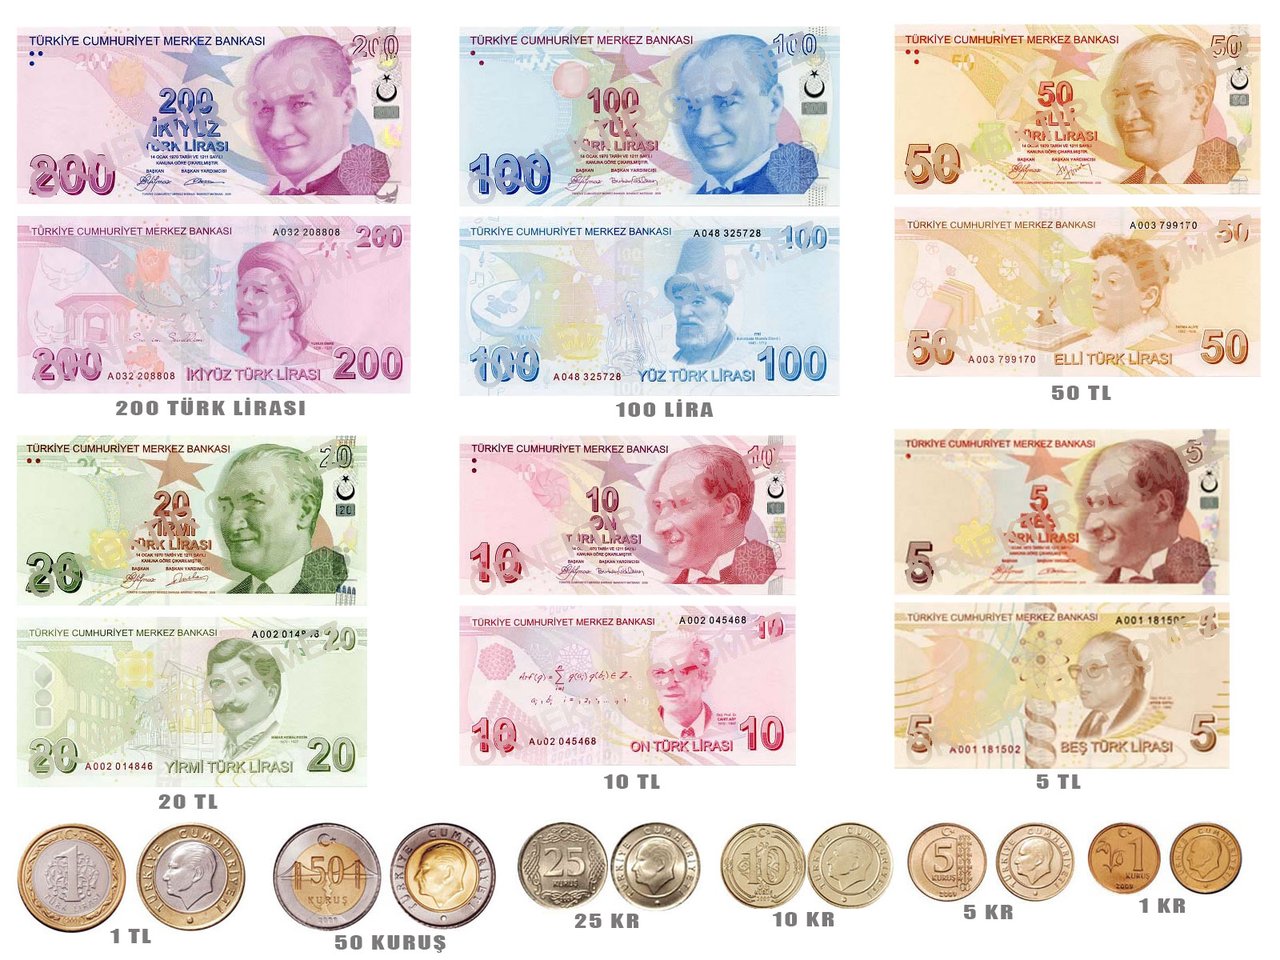 Обмен валюты турецкой лиры на рубли макрос обмена валют